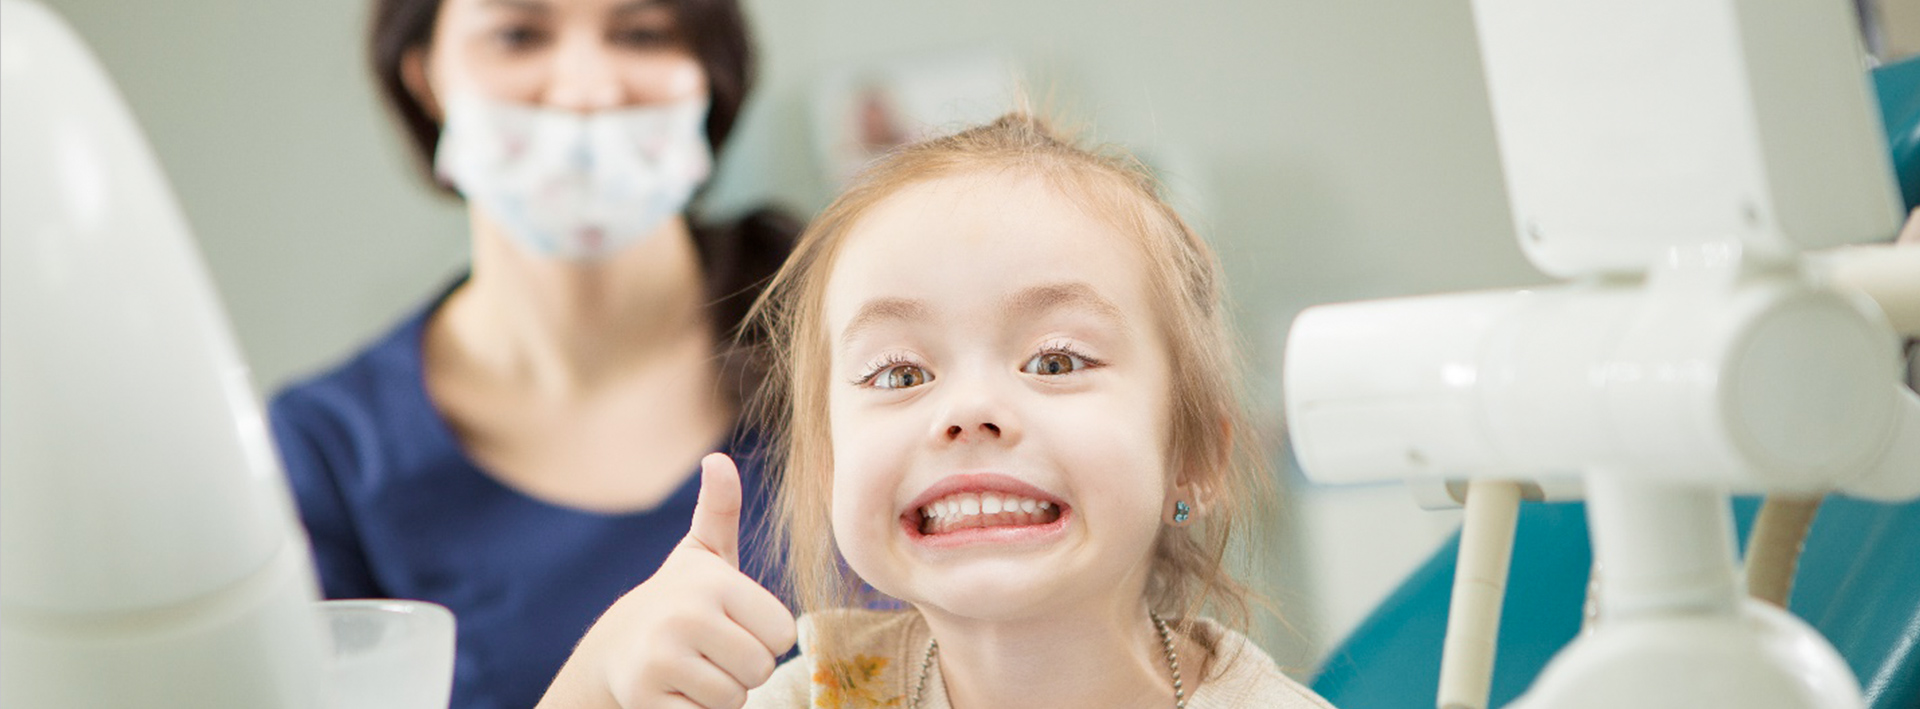 детская стоматология бесплатно томск